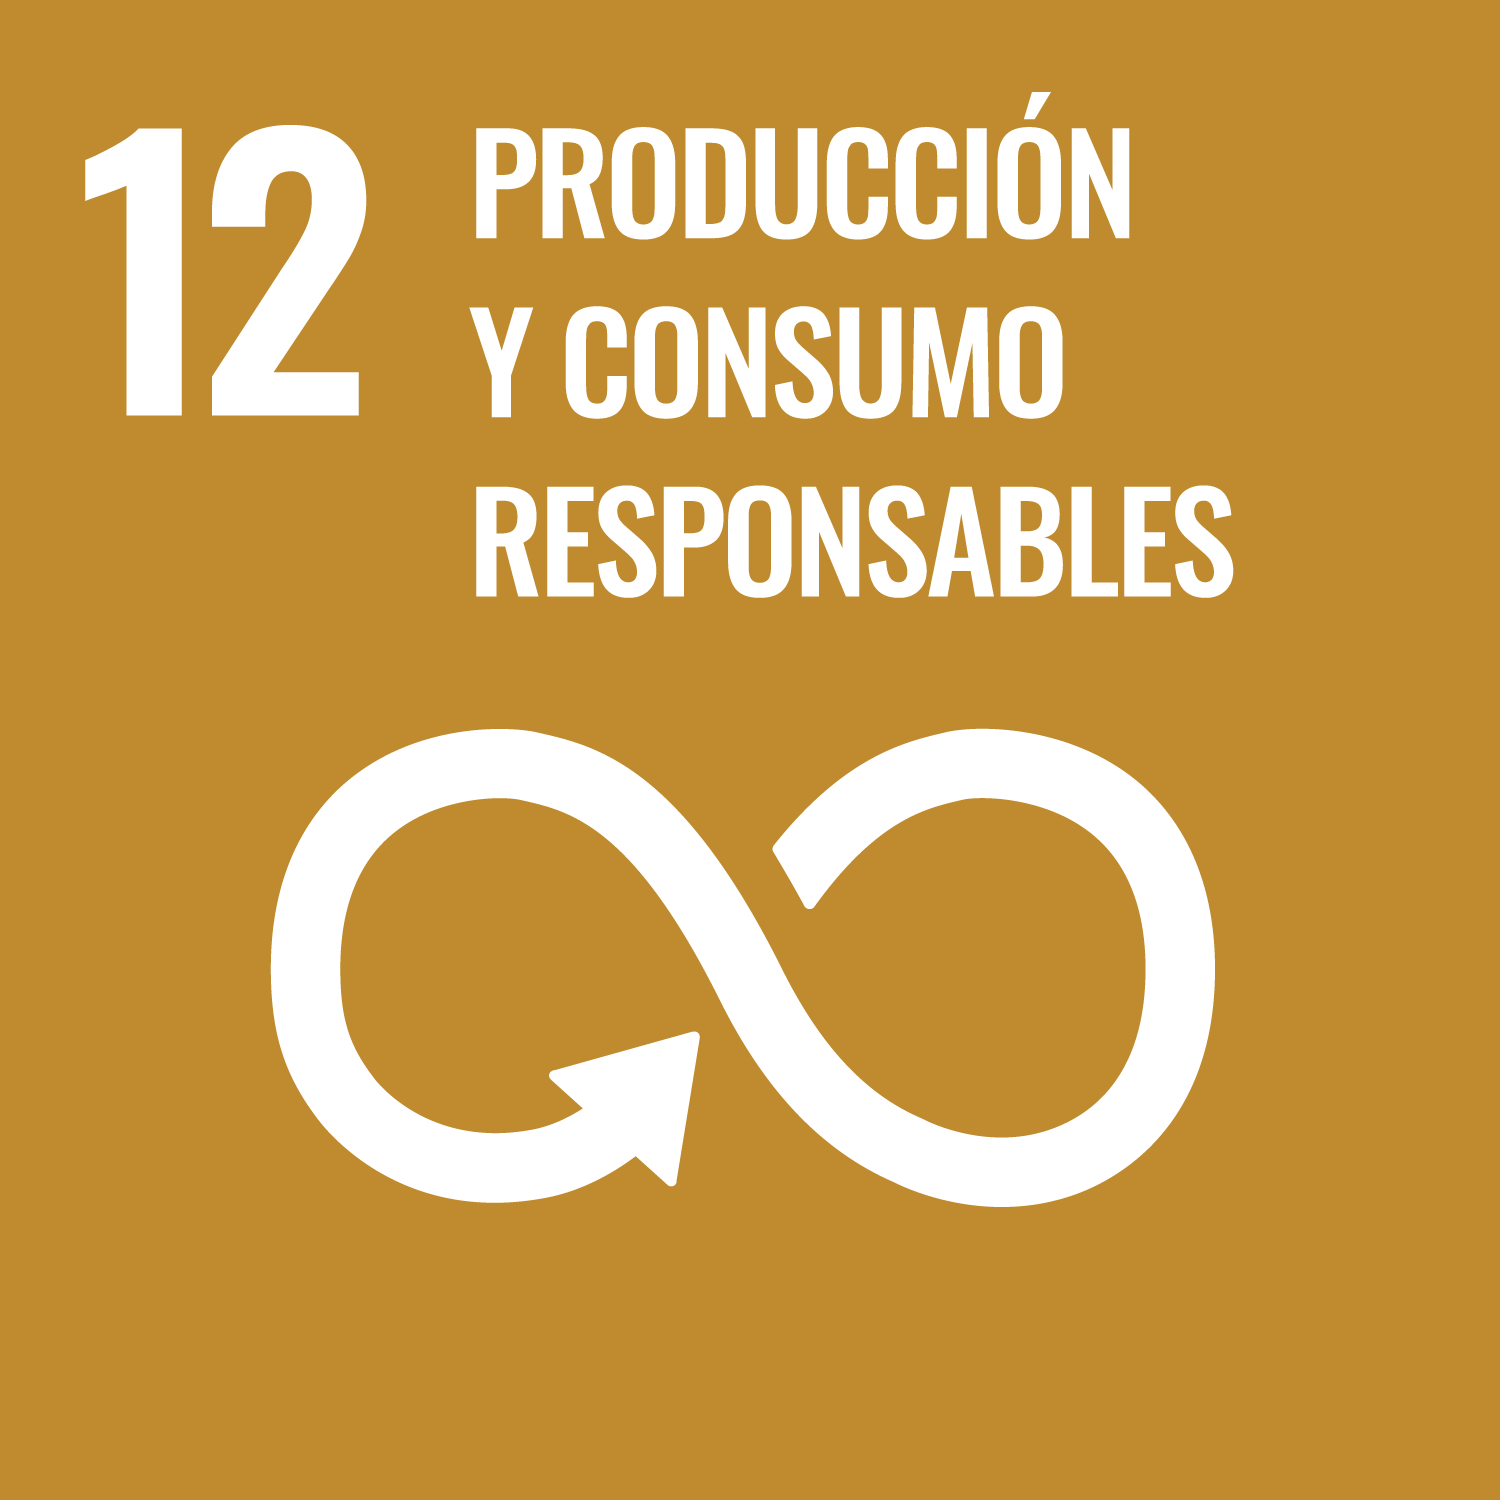 ODS 12</p>
<h5>Producción y consumo responsable</h5>
<p>